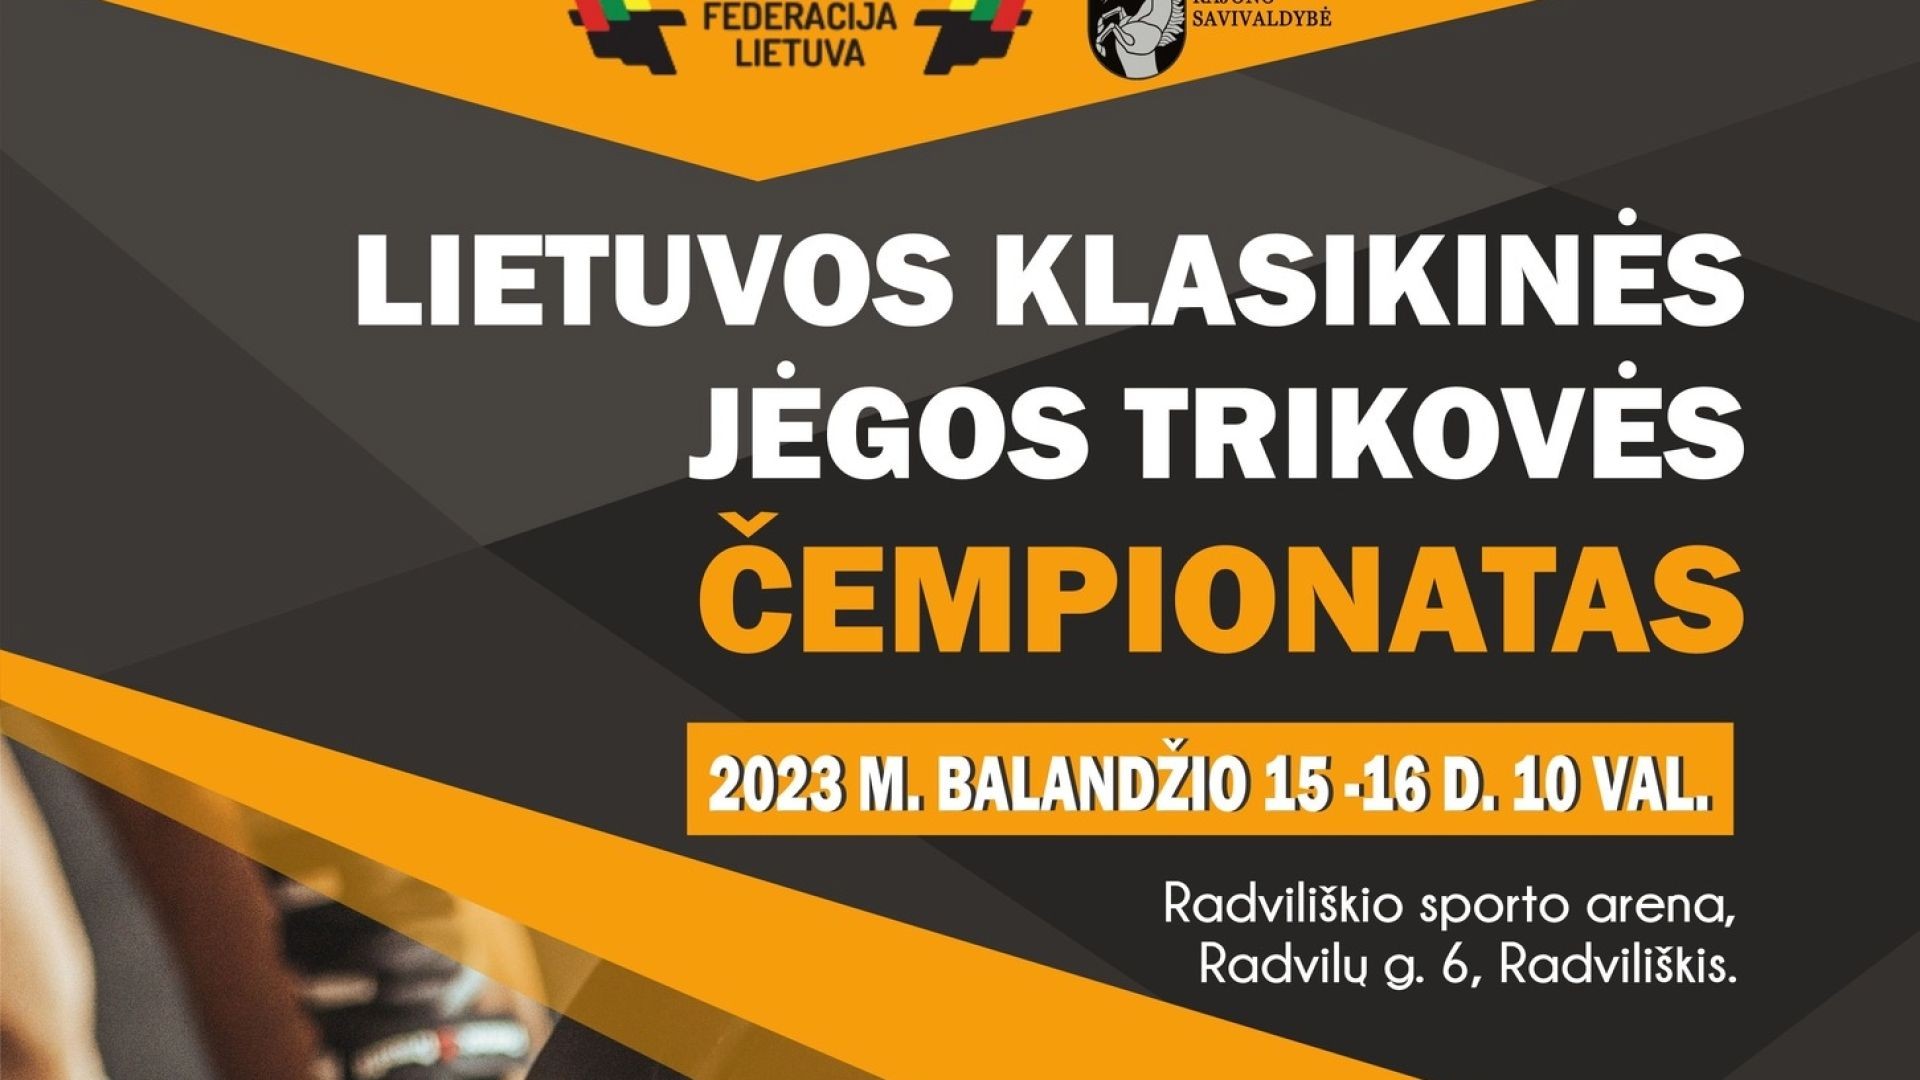 I diena | Lietuvos klasikinės jėgos trikovės čempionatas